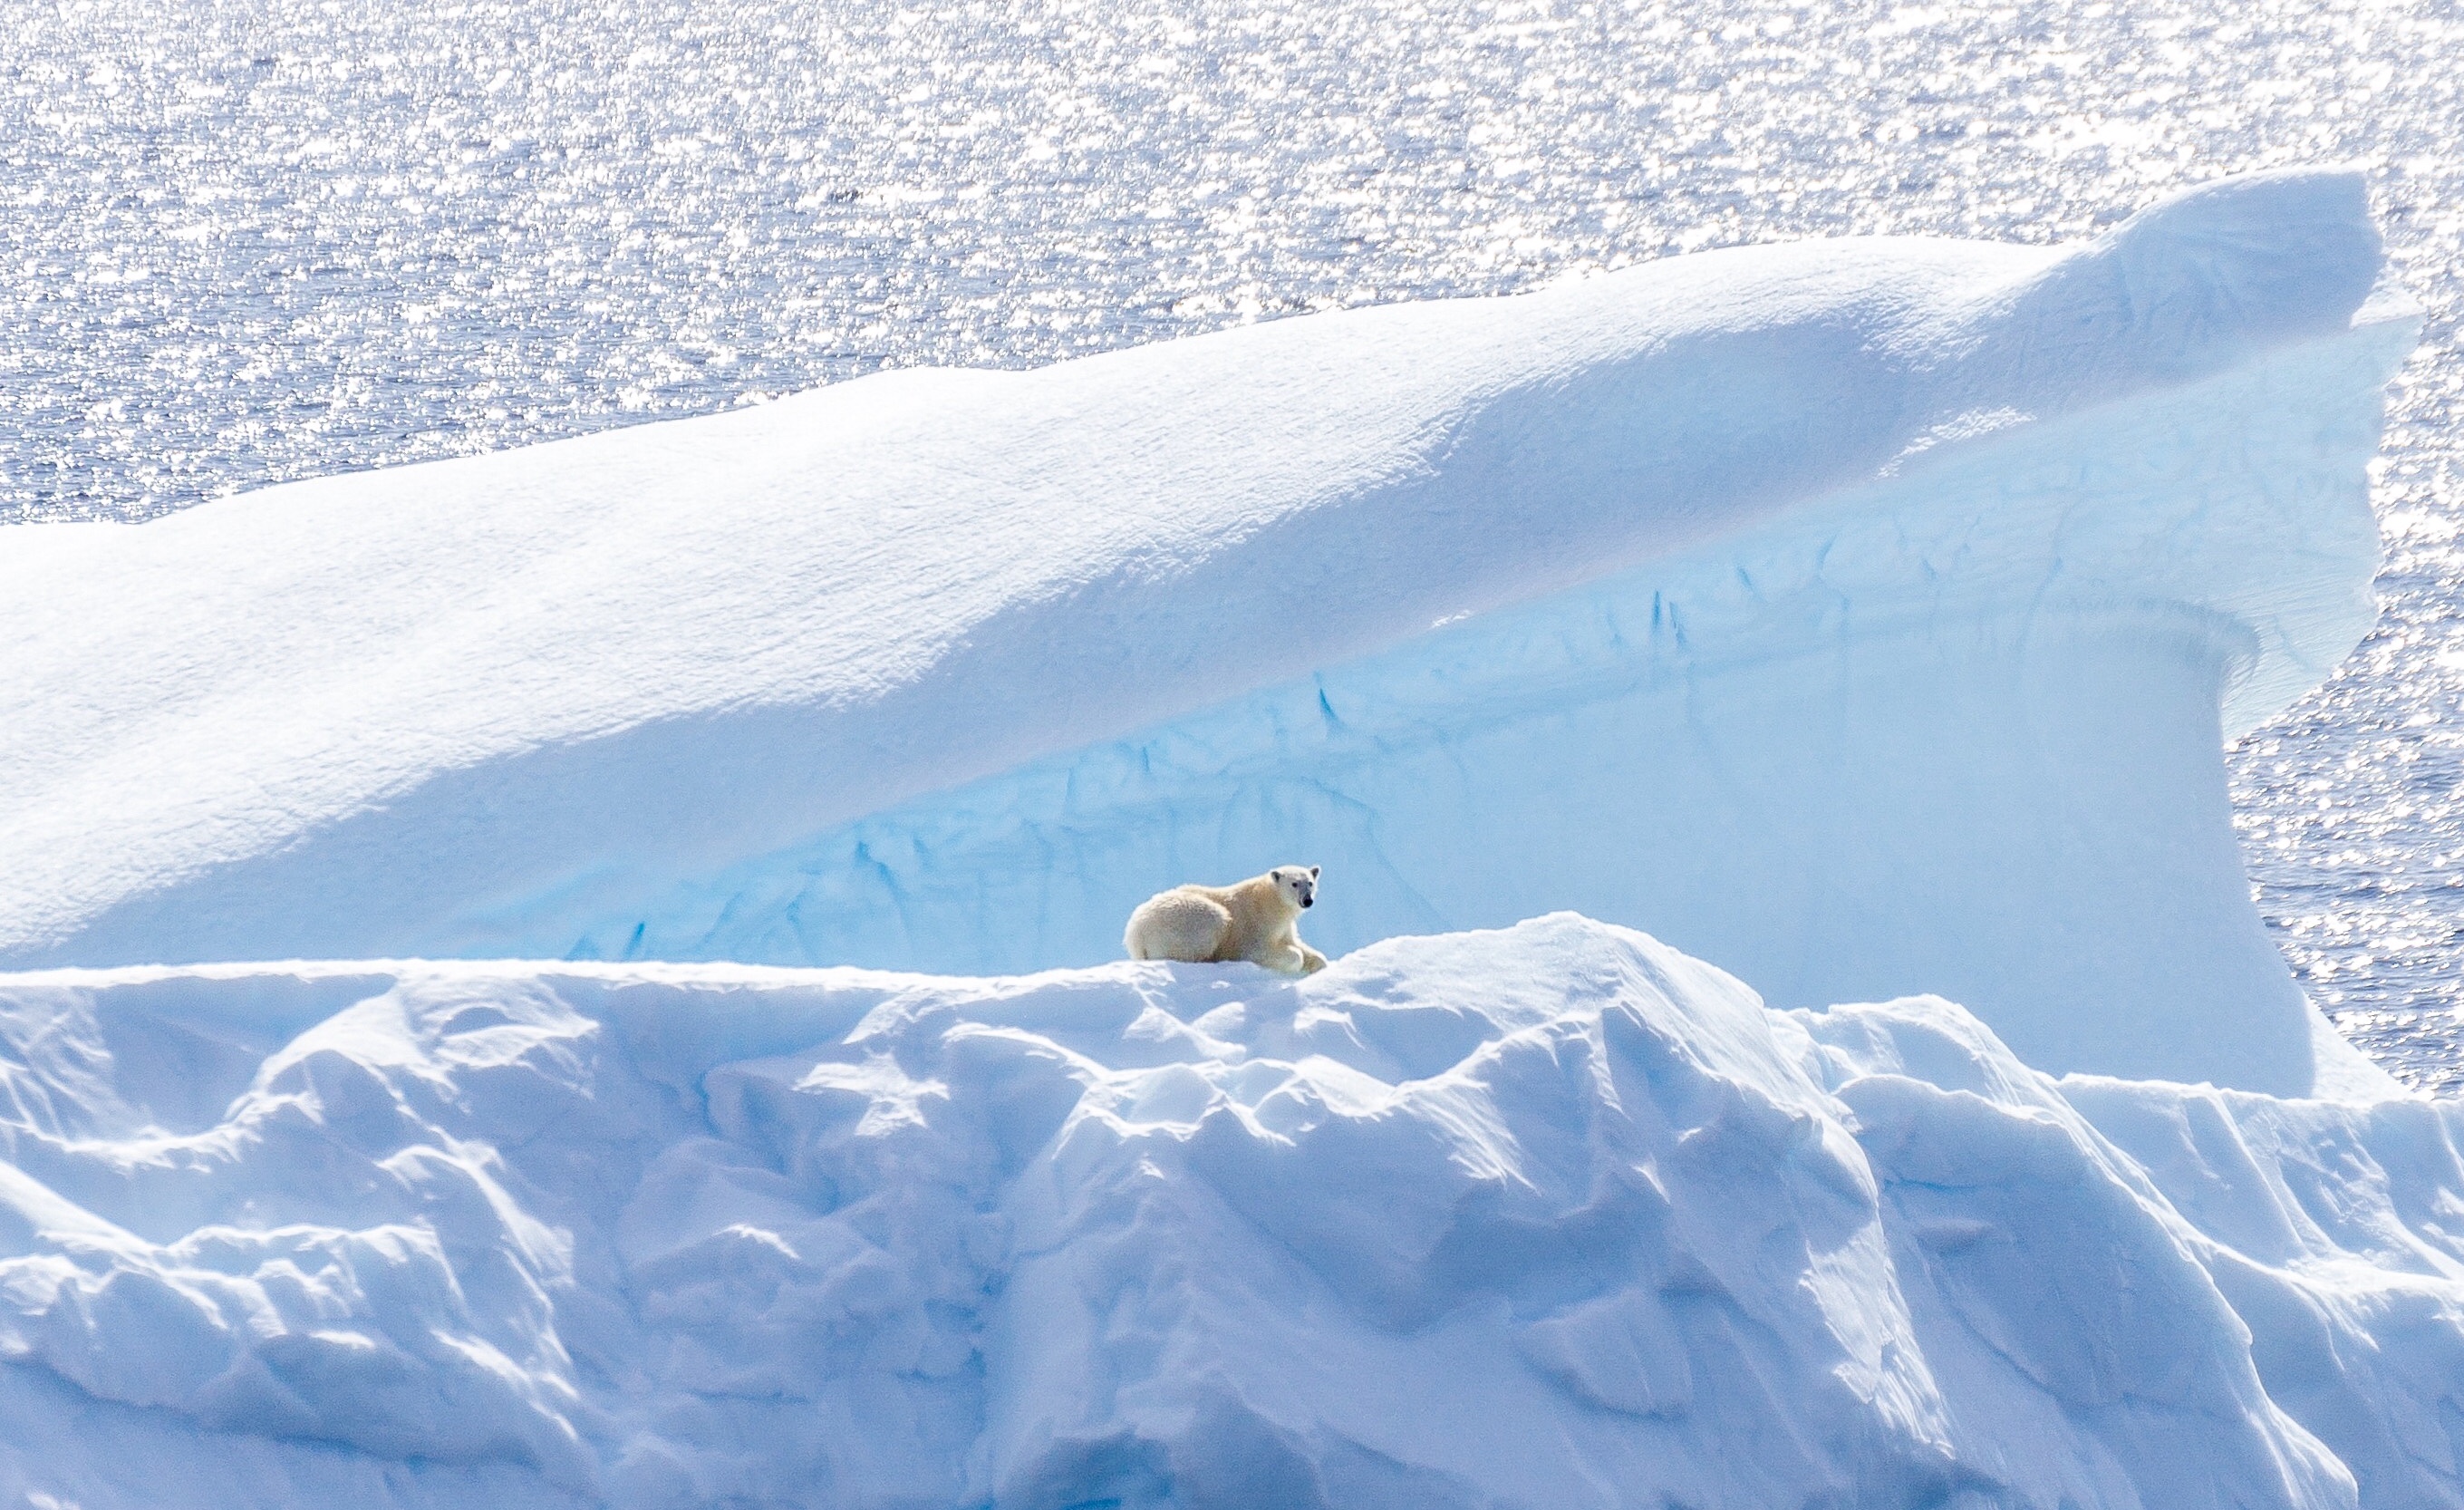 Polar bear on an ice flow